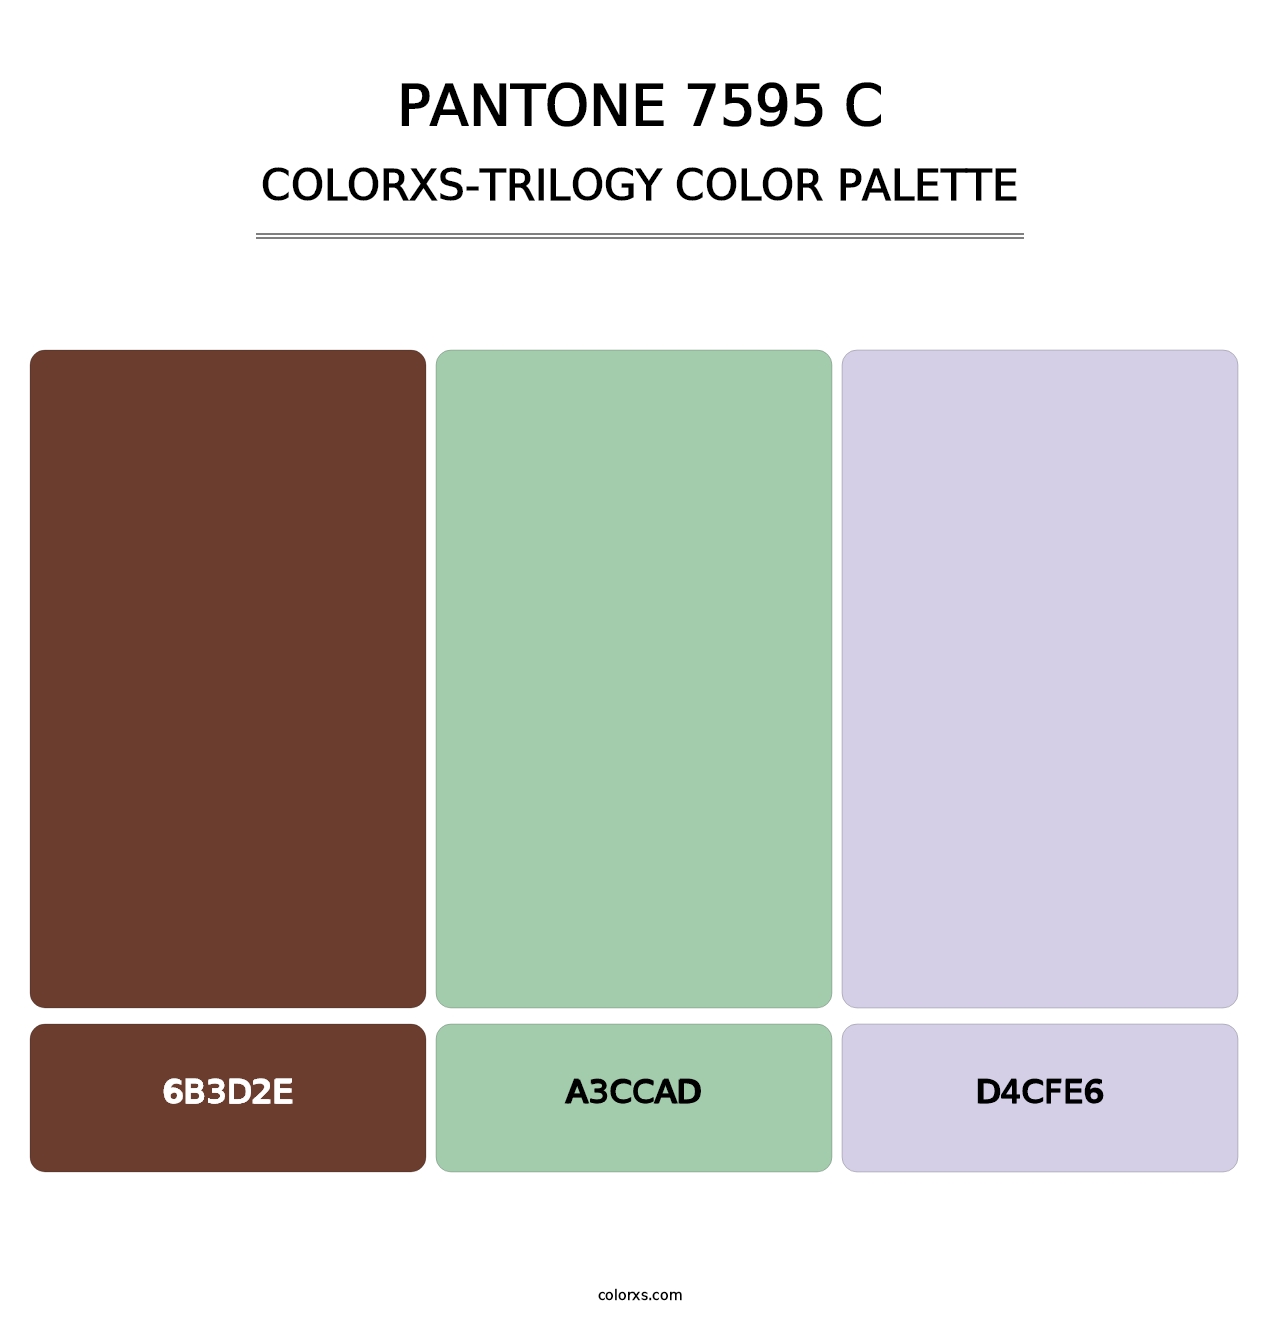 PANTONE 7595 C - Colorxs Trilogy Palette